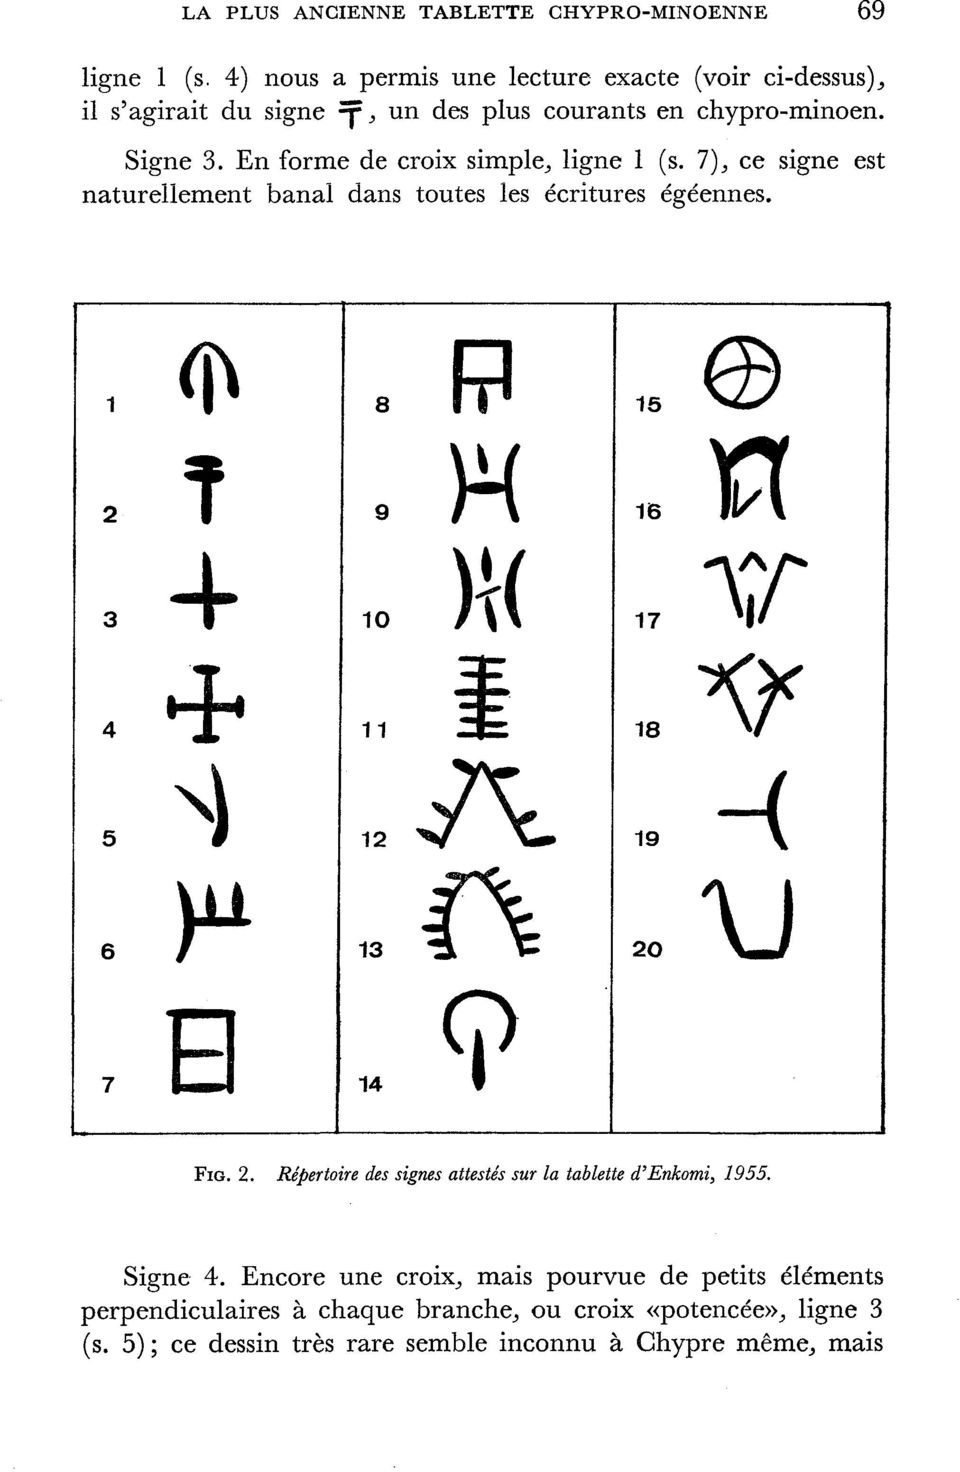 En forme de croix simple,, ligne 1 (s. 1), ce signe est naturellement banal dans toutes les écritures égéennes. s rp,.. 4 io K(. S,0 n 12 V W? 14 f.